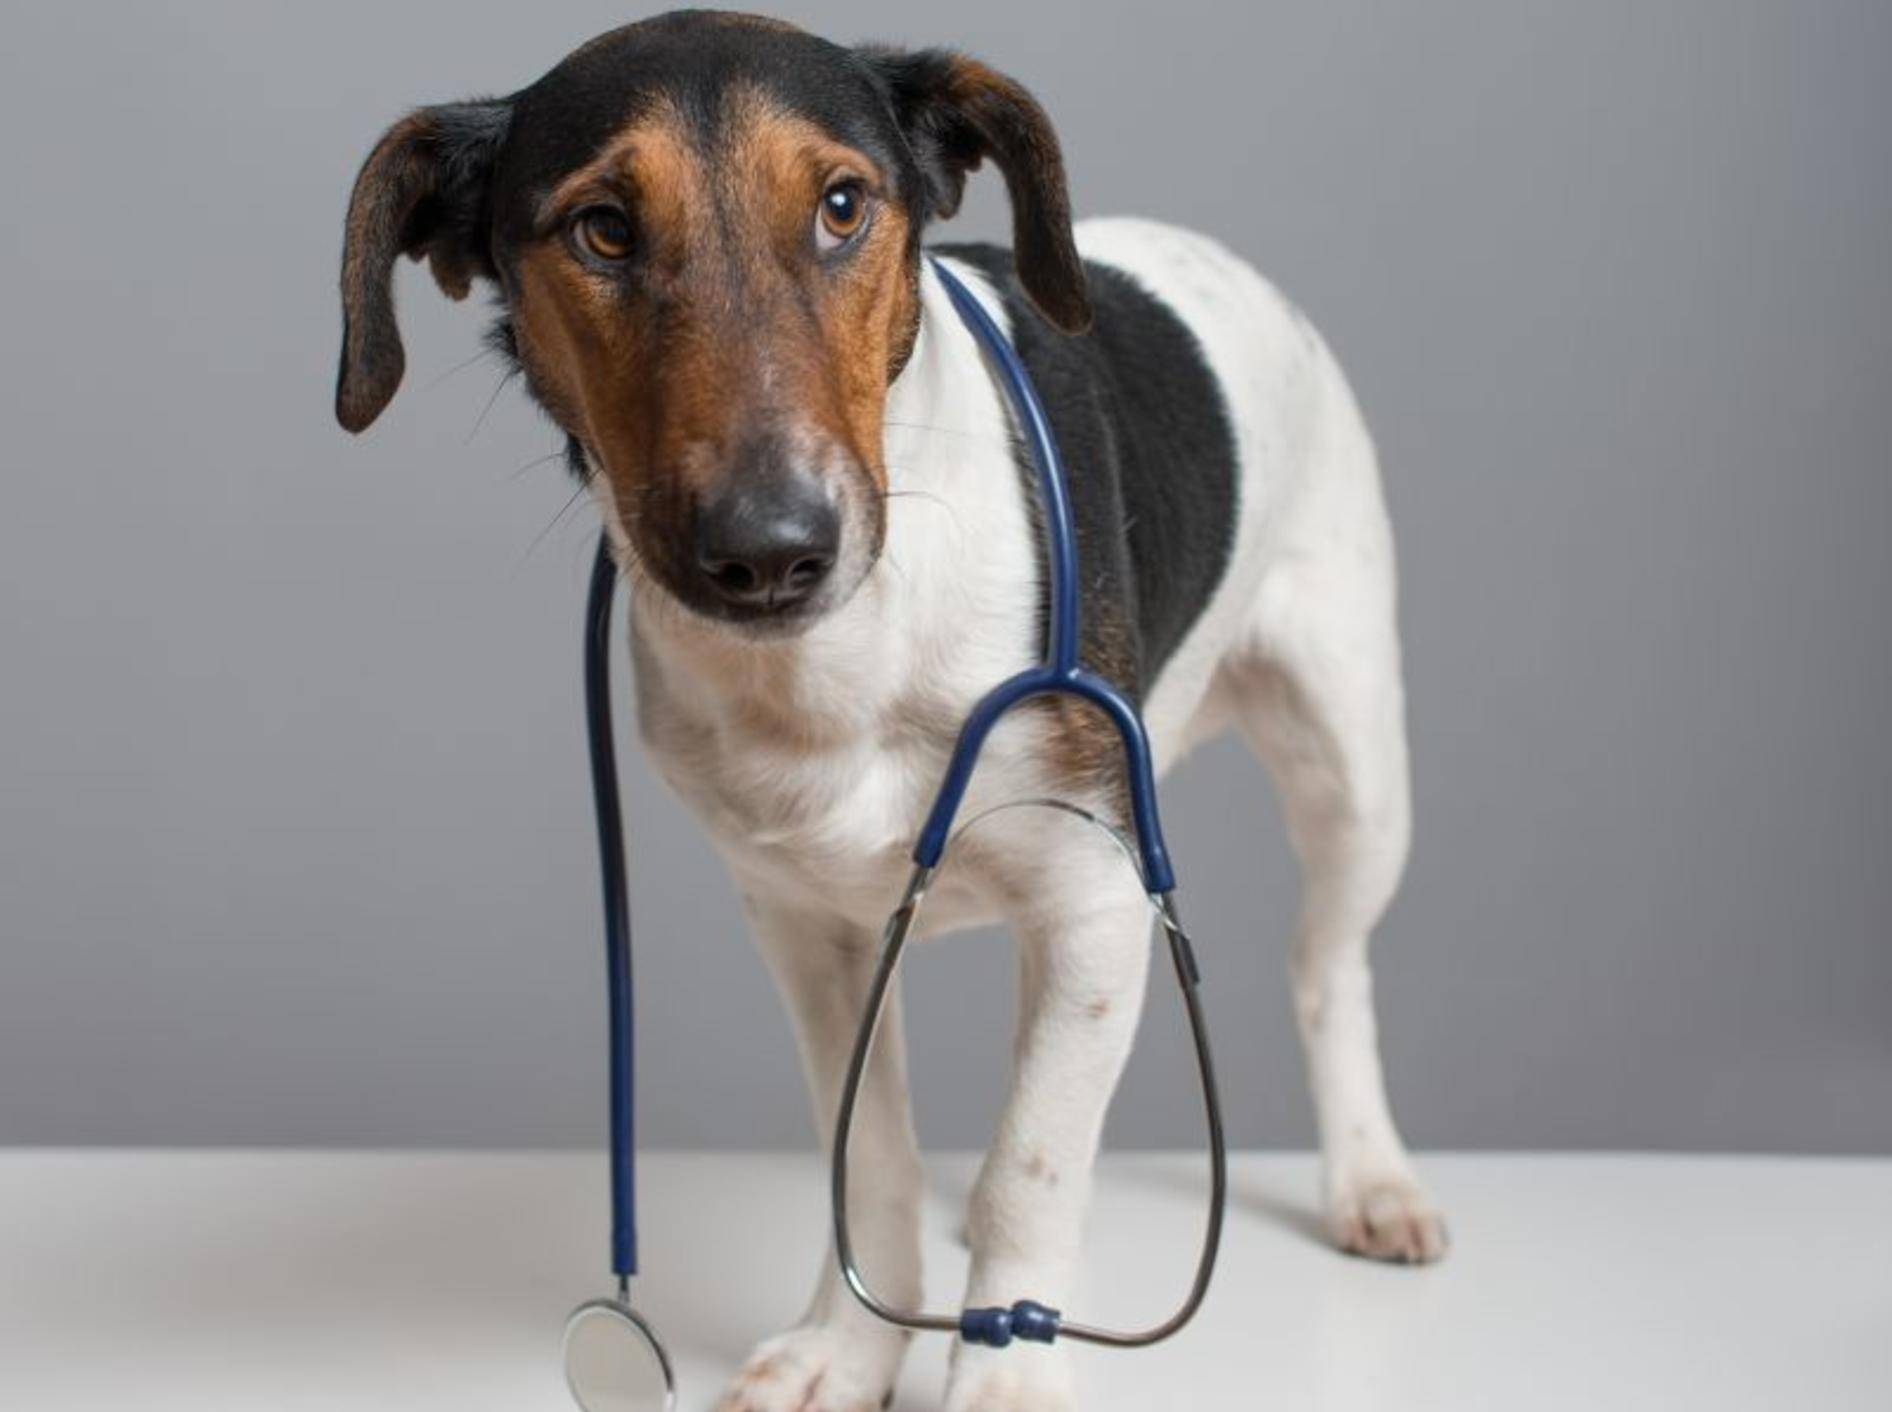 Die Bauchspeicheldrüsenentzündung ist ein Fall für den Tierarzt – Bild: Shutterstock / laszlo